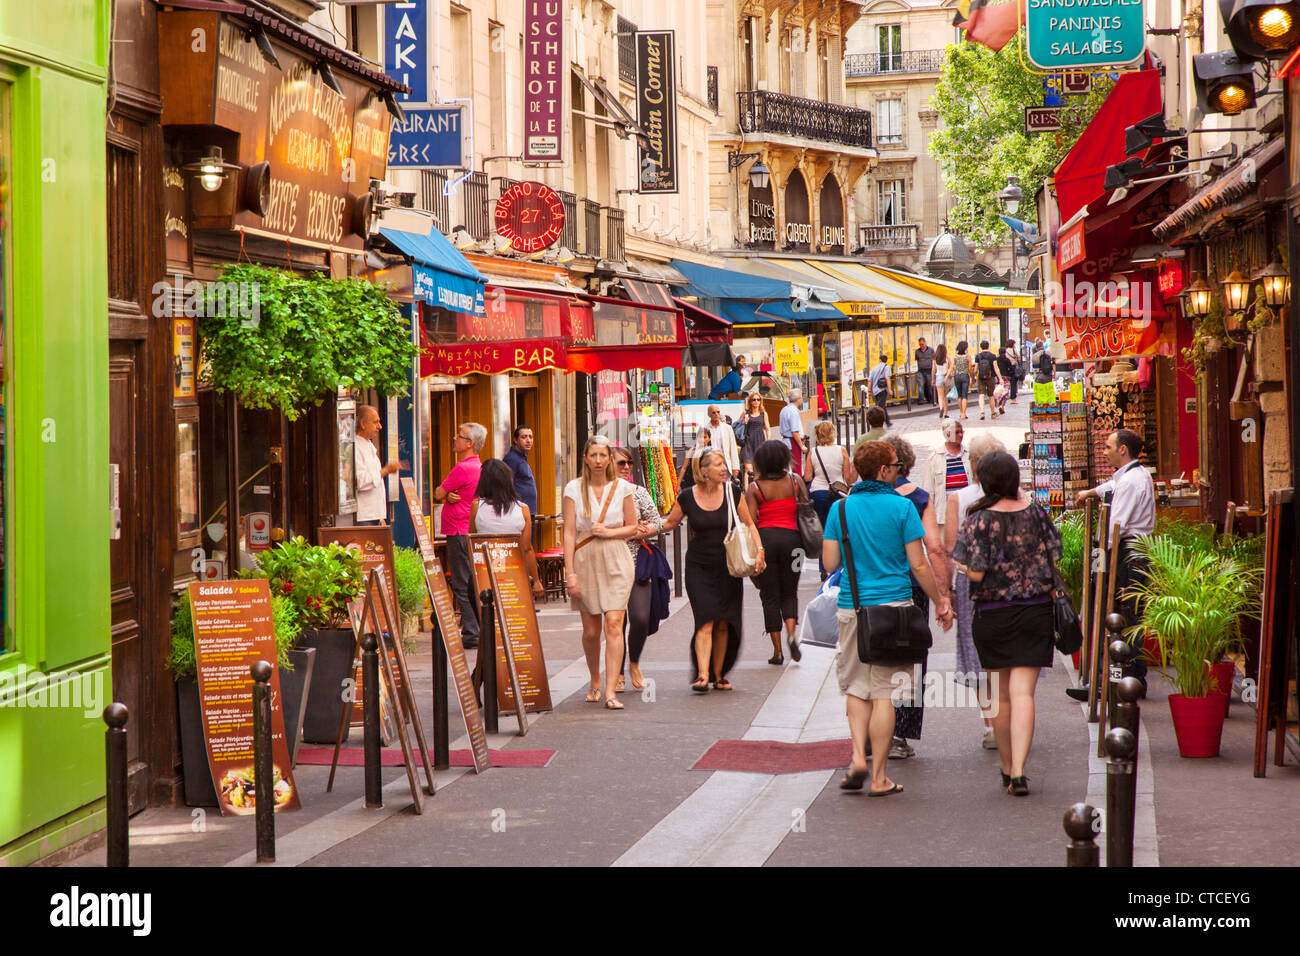 Boutiques et touristes le long de la rue Saint-Severin dans le quartier Latin, Paris, France Banque D'Images